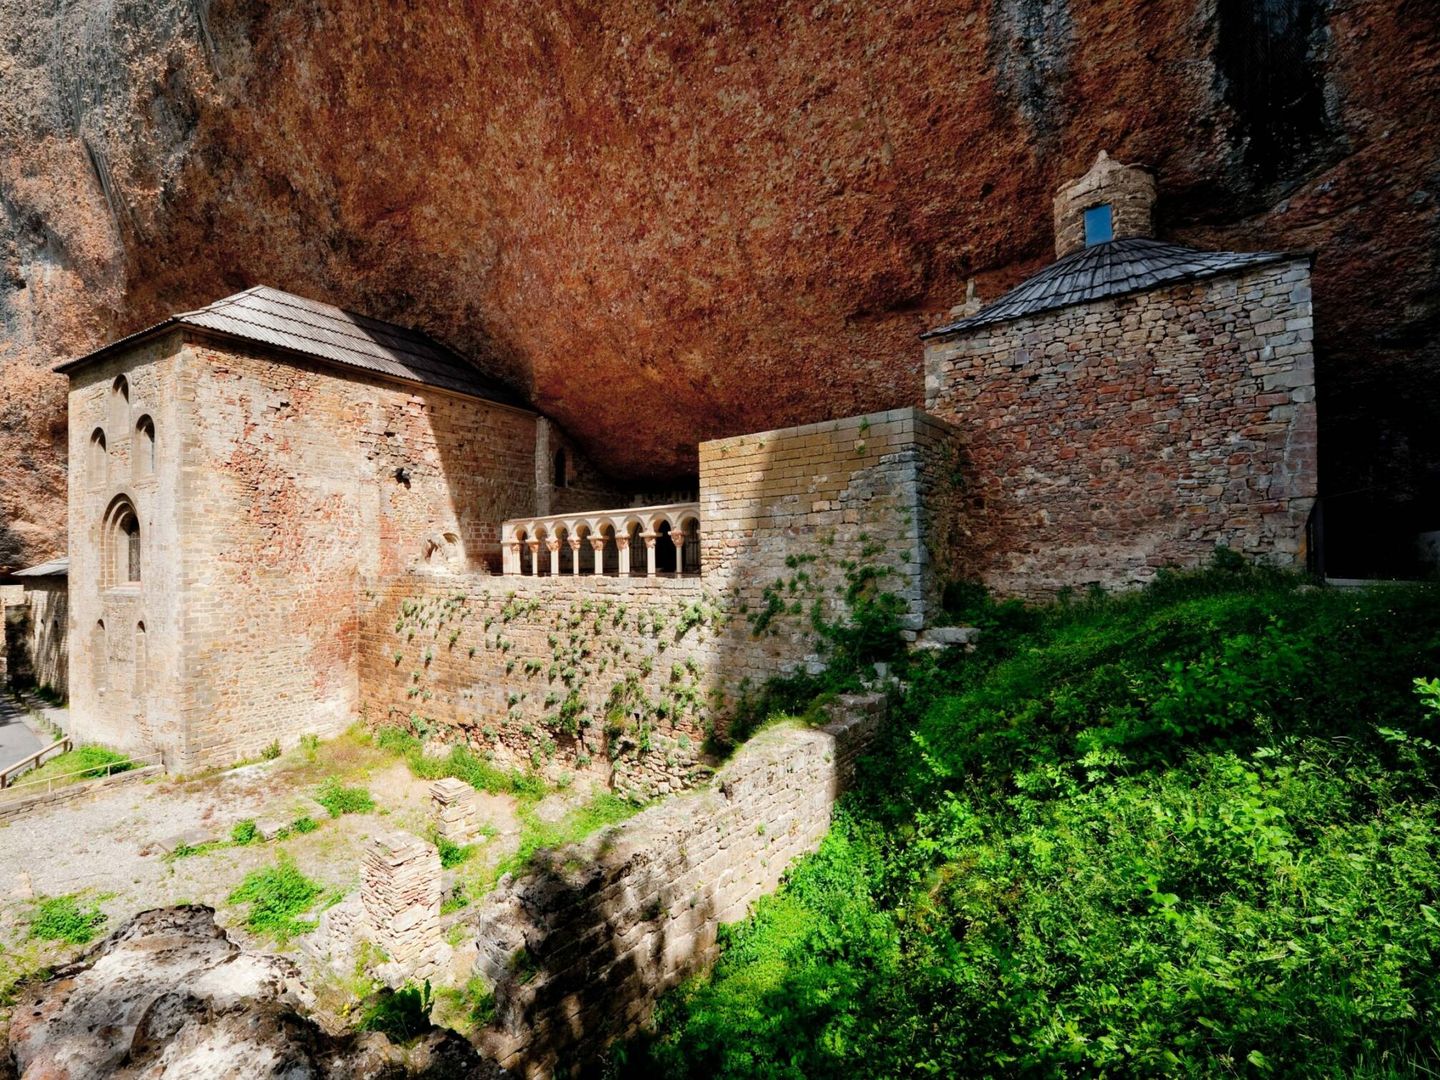 El monasterio de San Juan de la Peña, un lugar enclavado en una roca desde el siglo X. (Gobierno de Aragón)